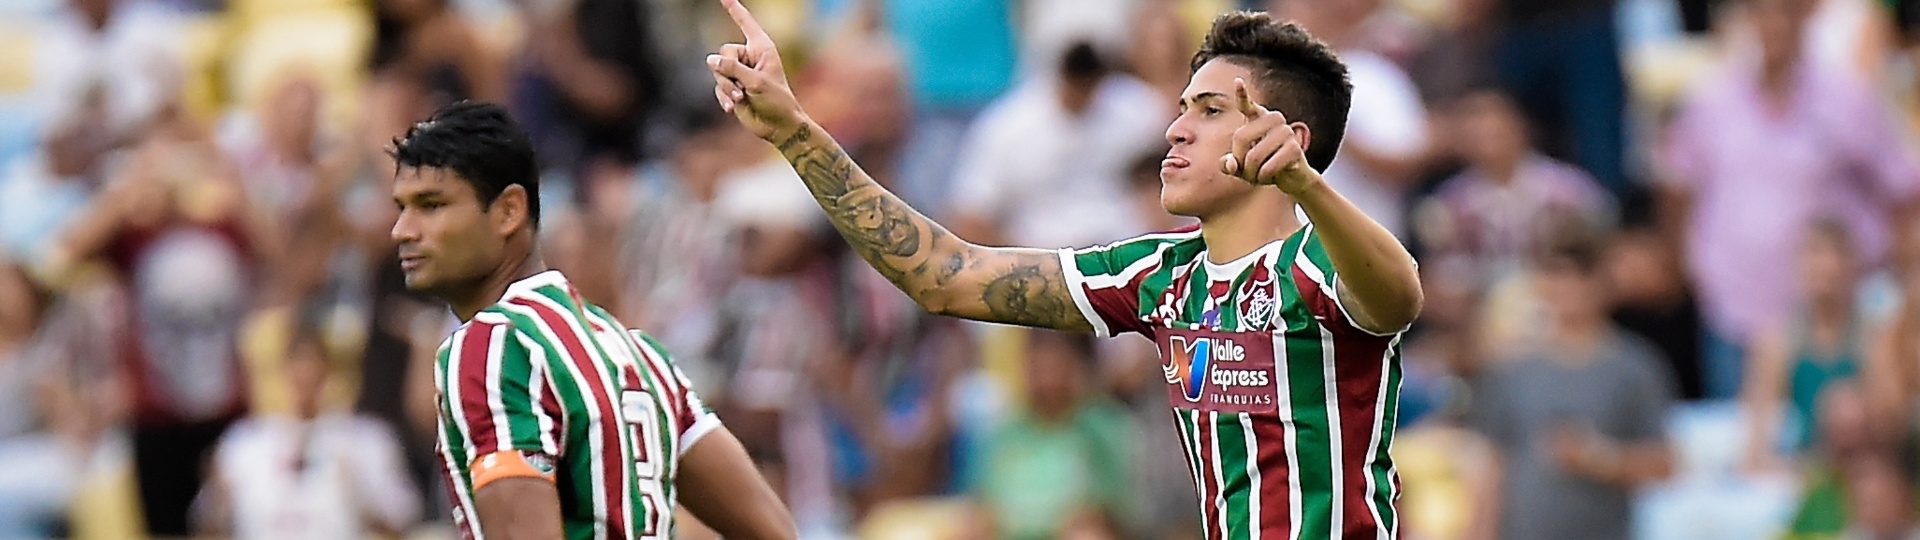 O atacante Pedro comemora gol do Fluminense diante do Cruzeiro, no Maracanã